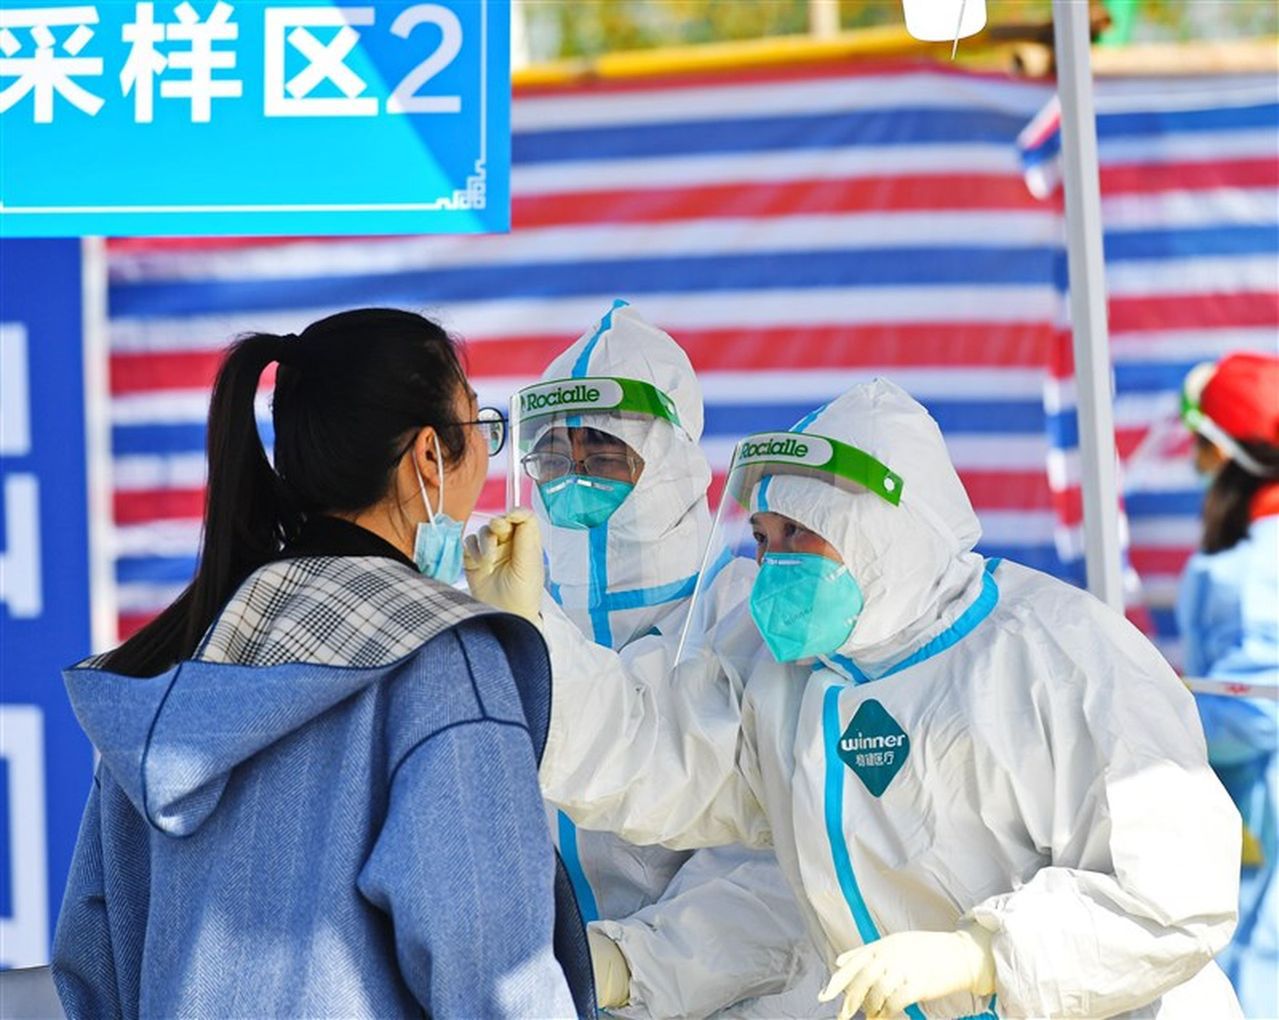 杭州市政府3日表示，該輪疫情累計本土確診一一三例，當地疫情的轉折點已出現。(中新社)